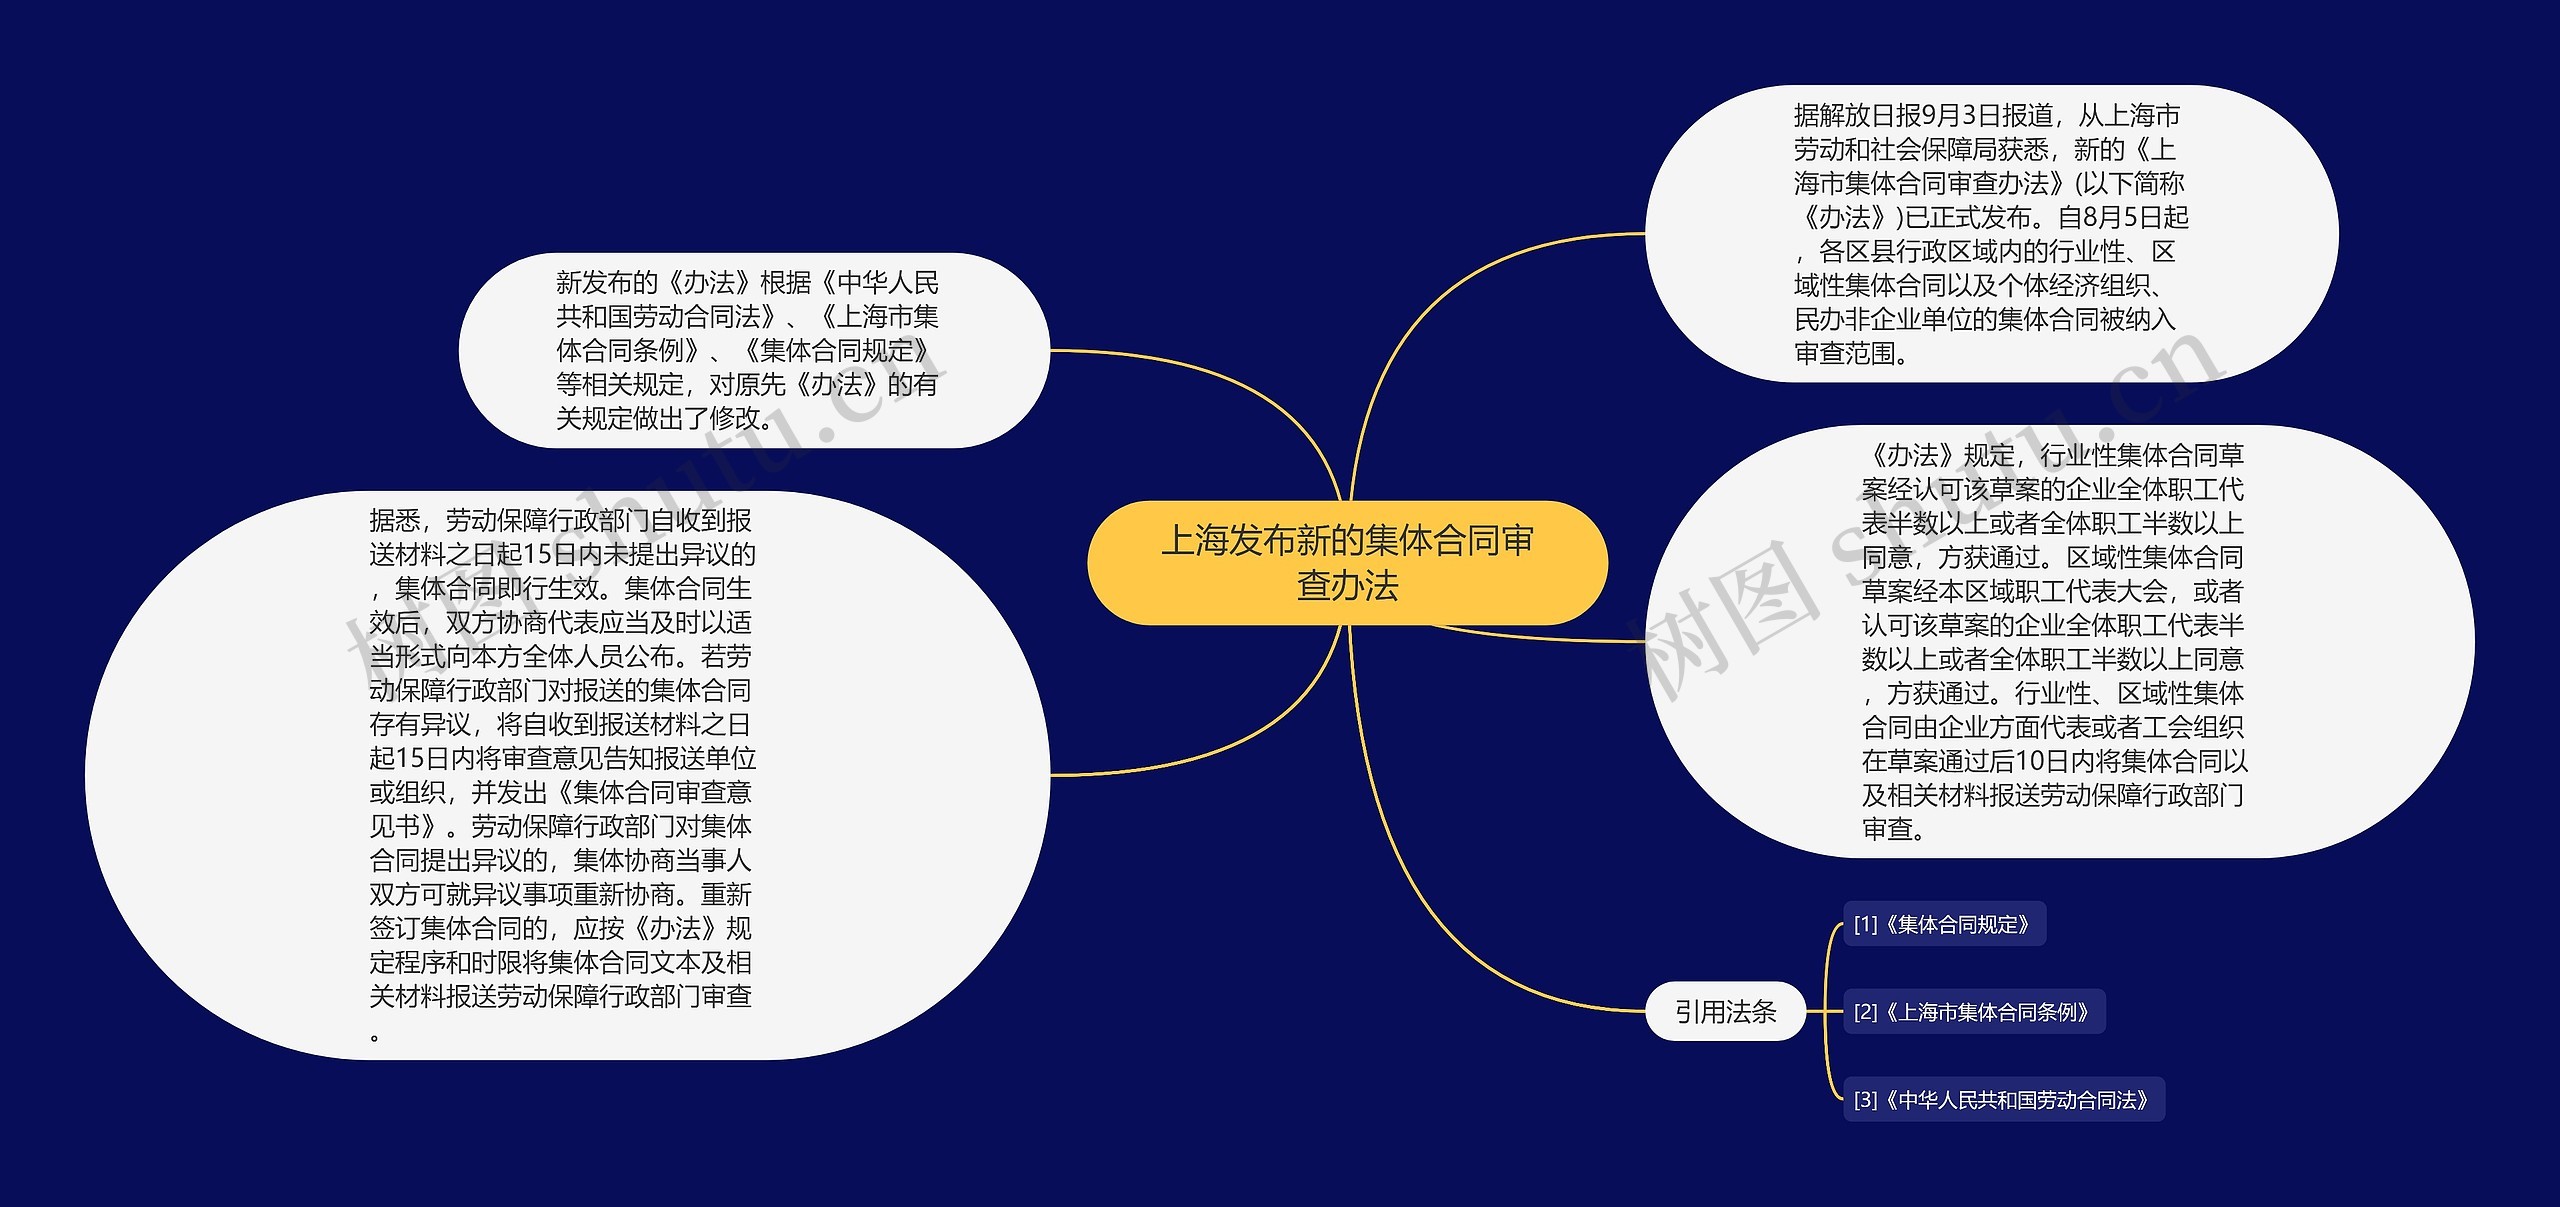 上海发布新的集体合同审查办法思维导图